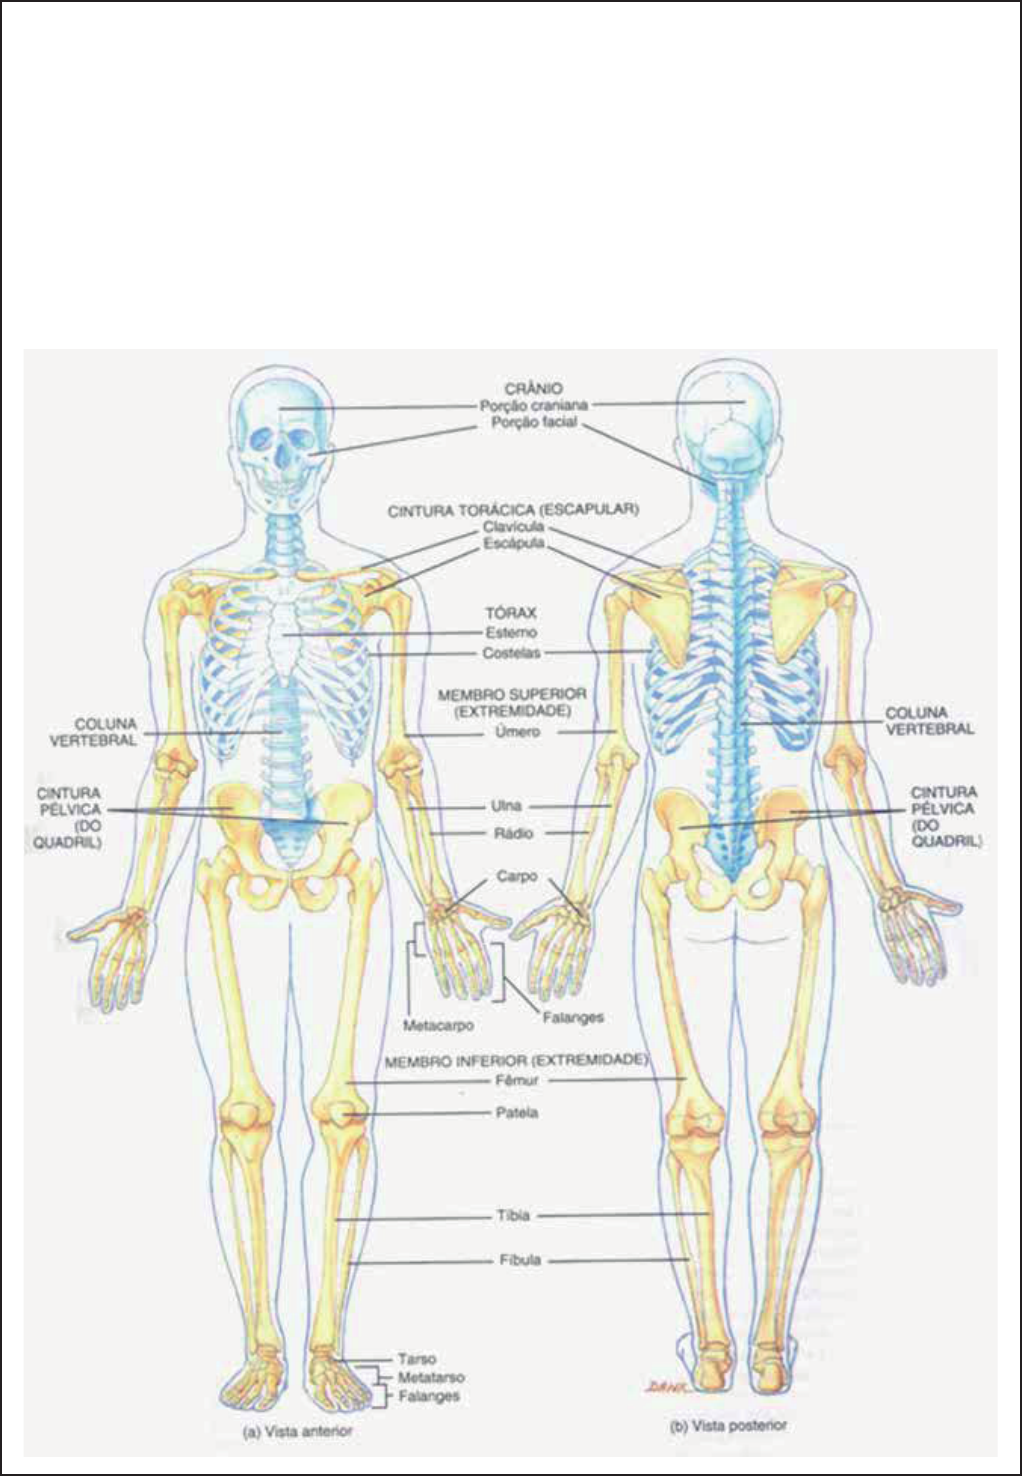 Aparelho Locomotor - Divisão do esqueleto - Anatomia Humana I